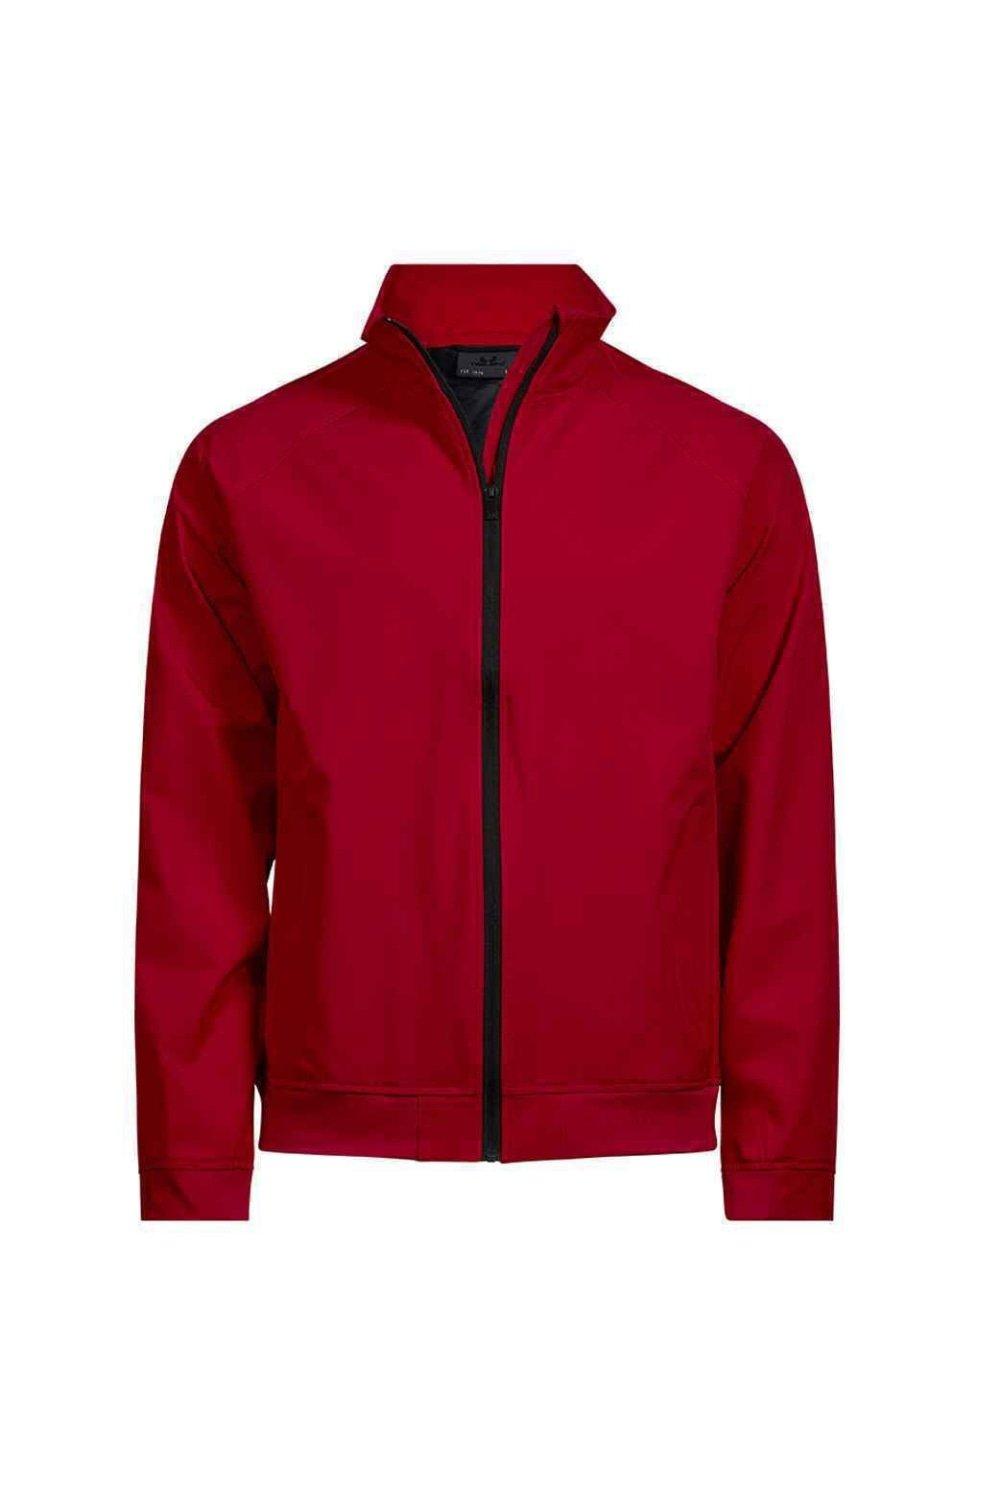 Клубная куртка TEE JAYS, красный цена и фото